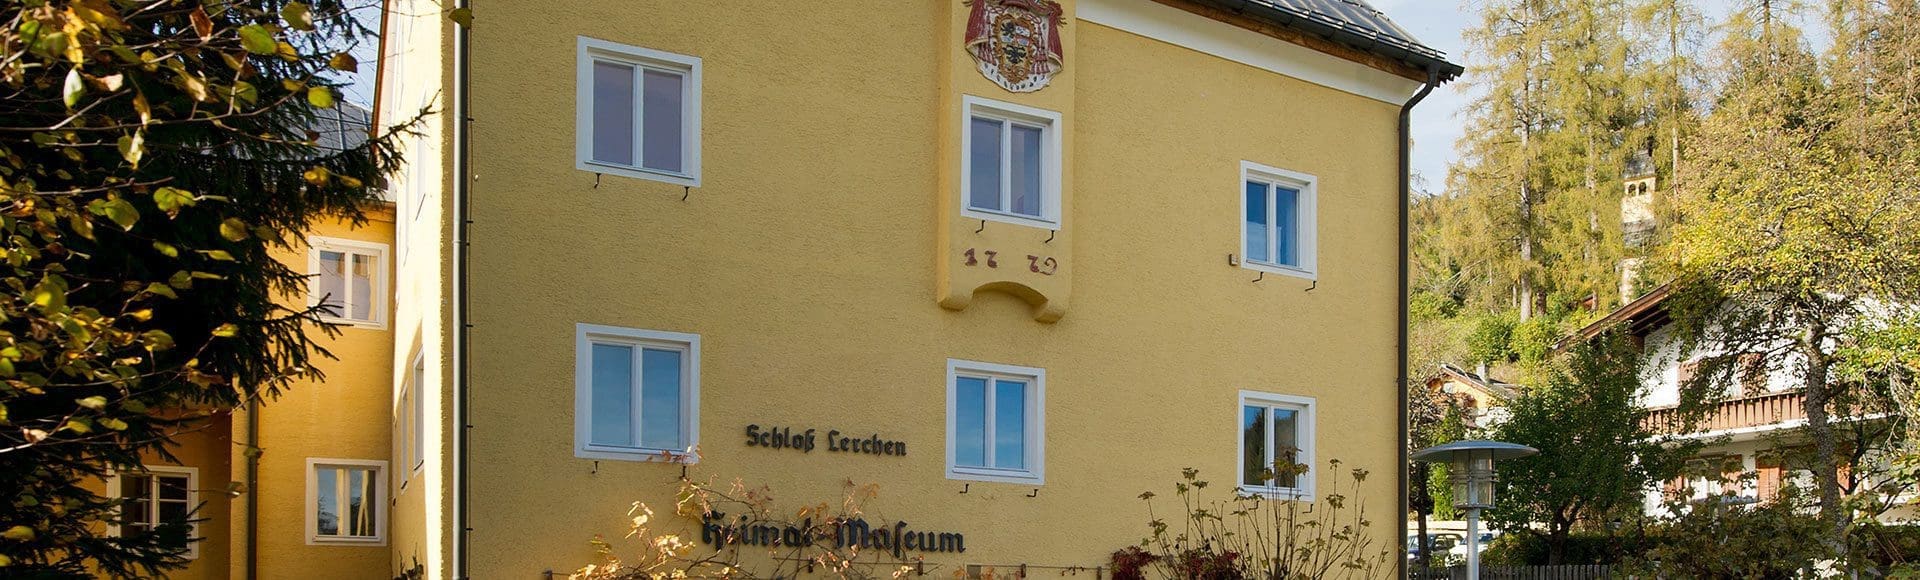 Museum Schloss Lerchen Radstädter Museumsverein 1